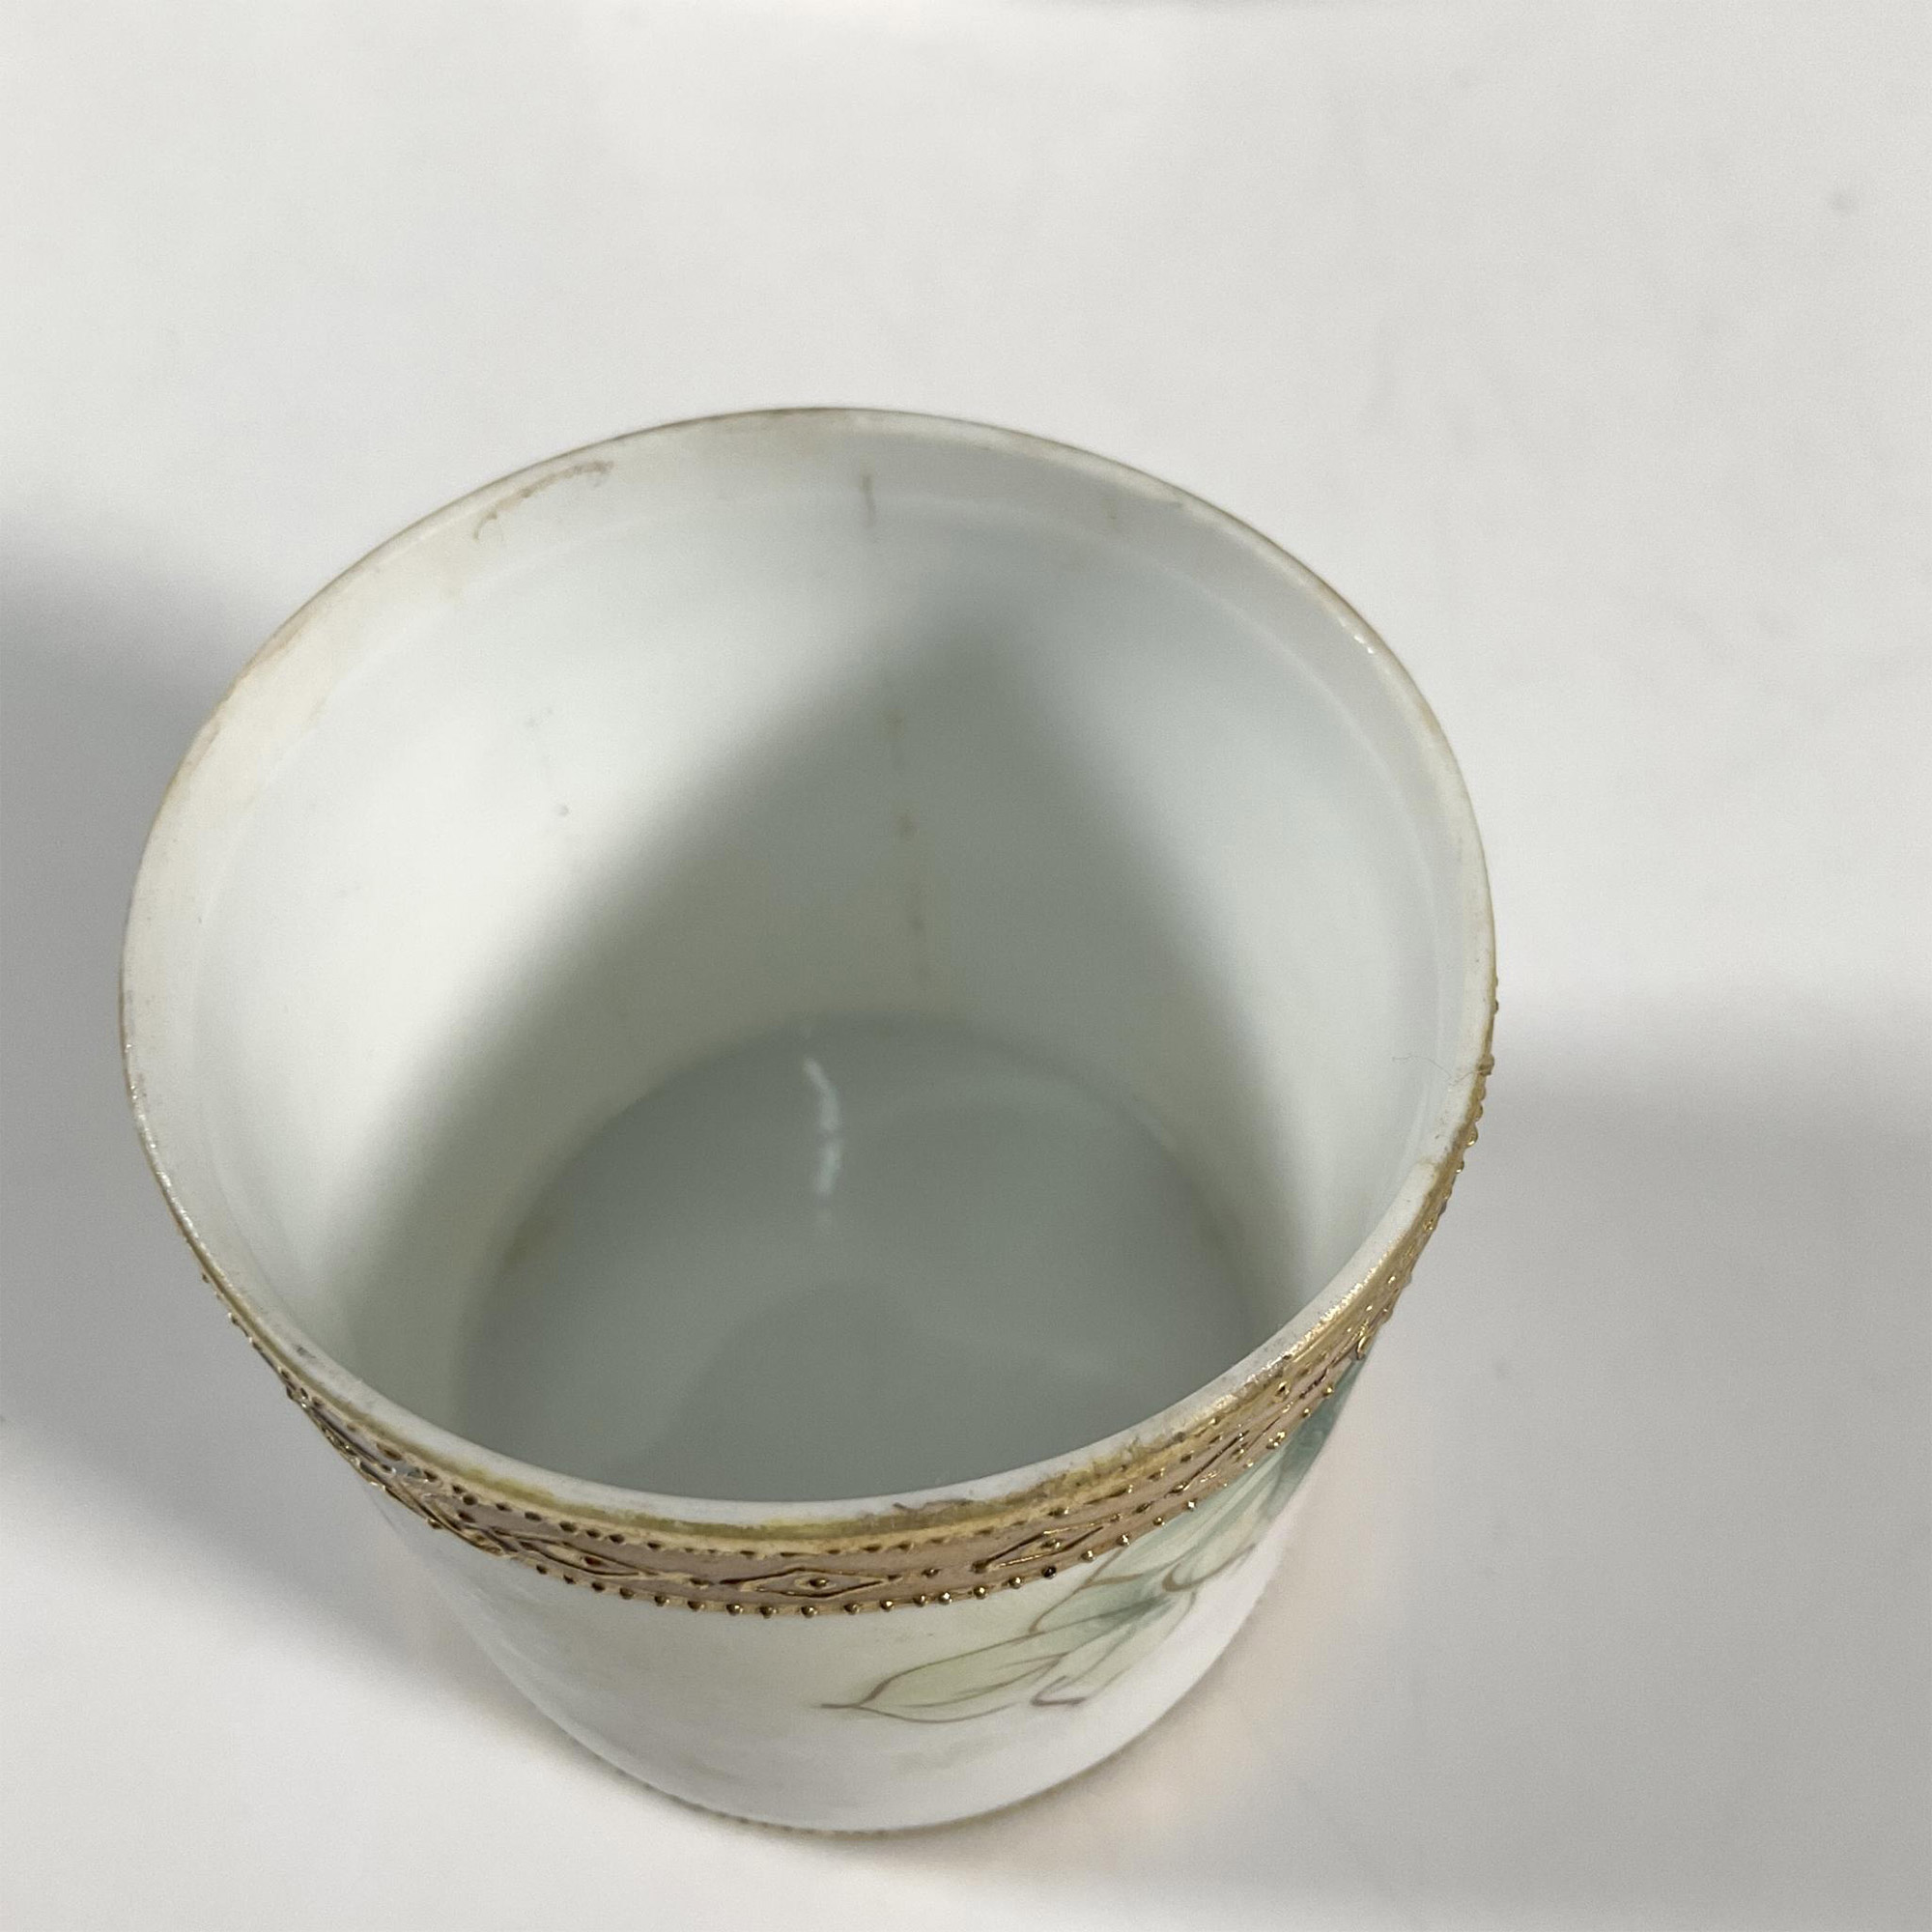 4pc Nippon Porcelain Floral Vanity Set - Image 4 of 4